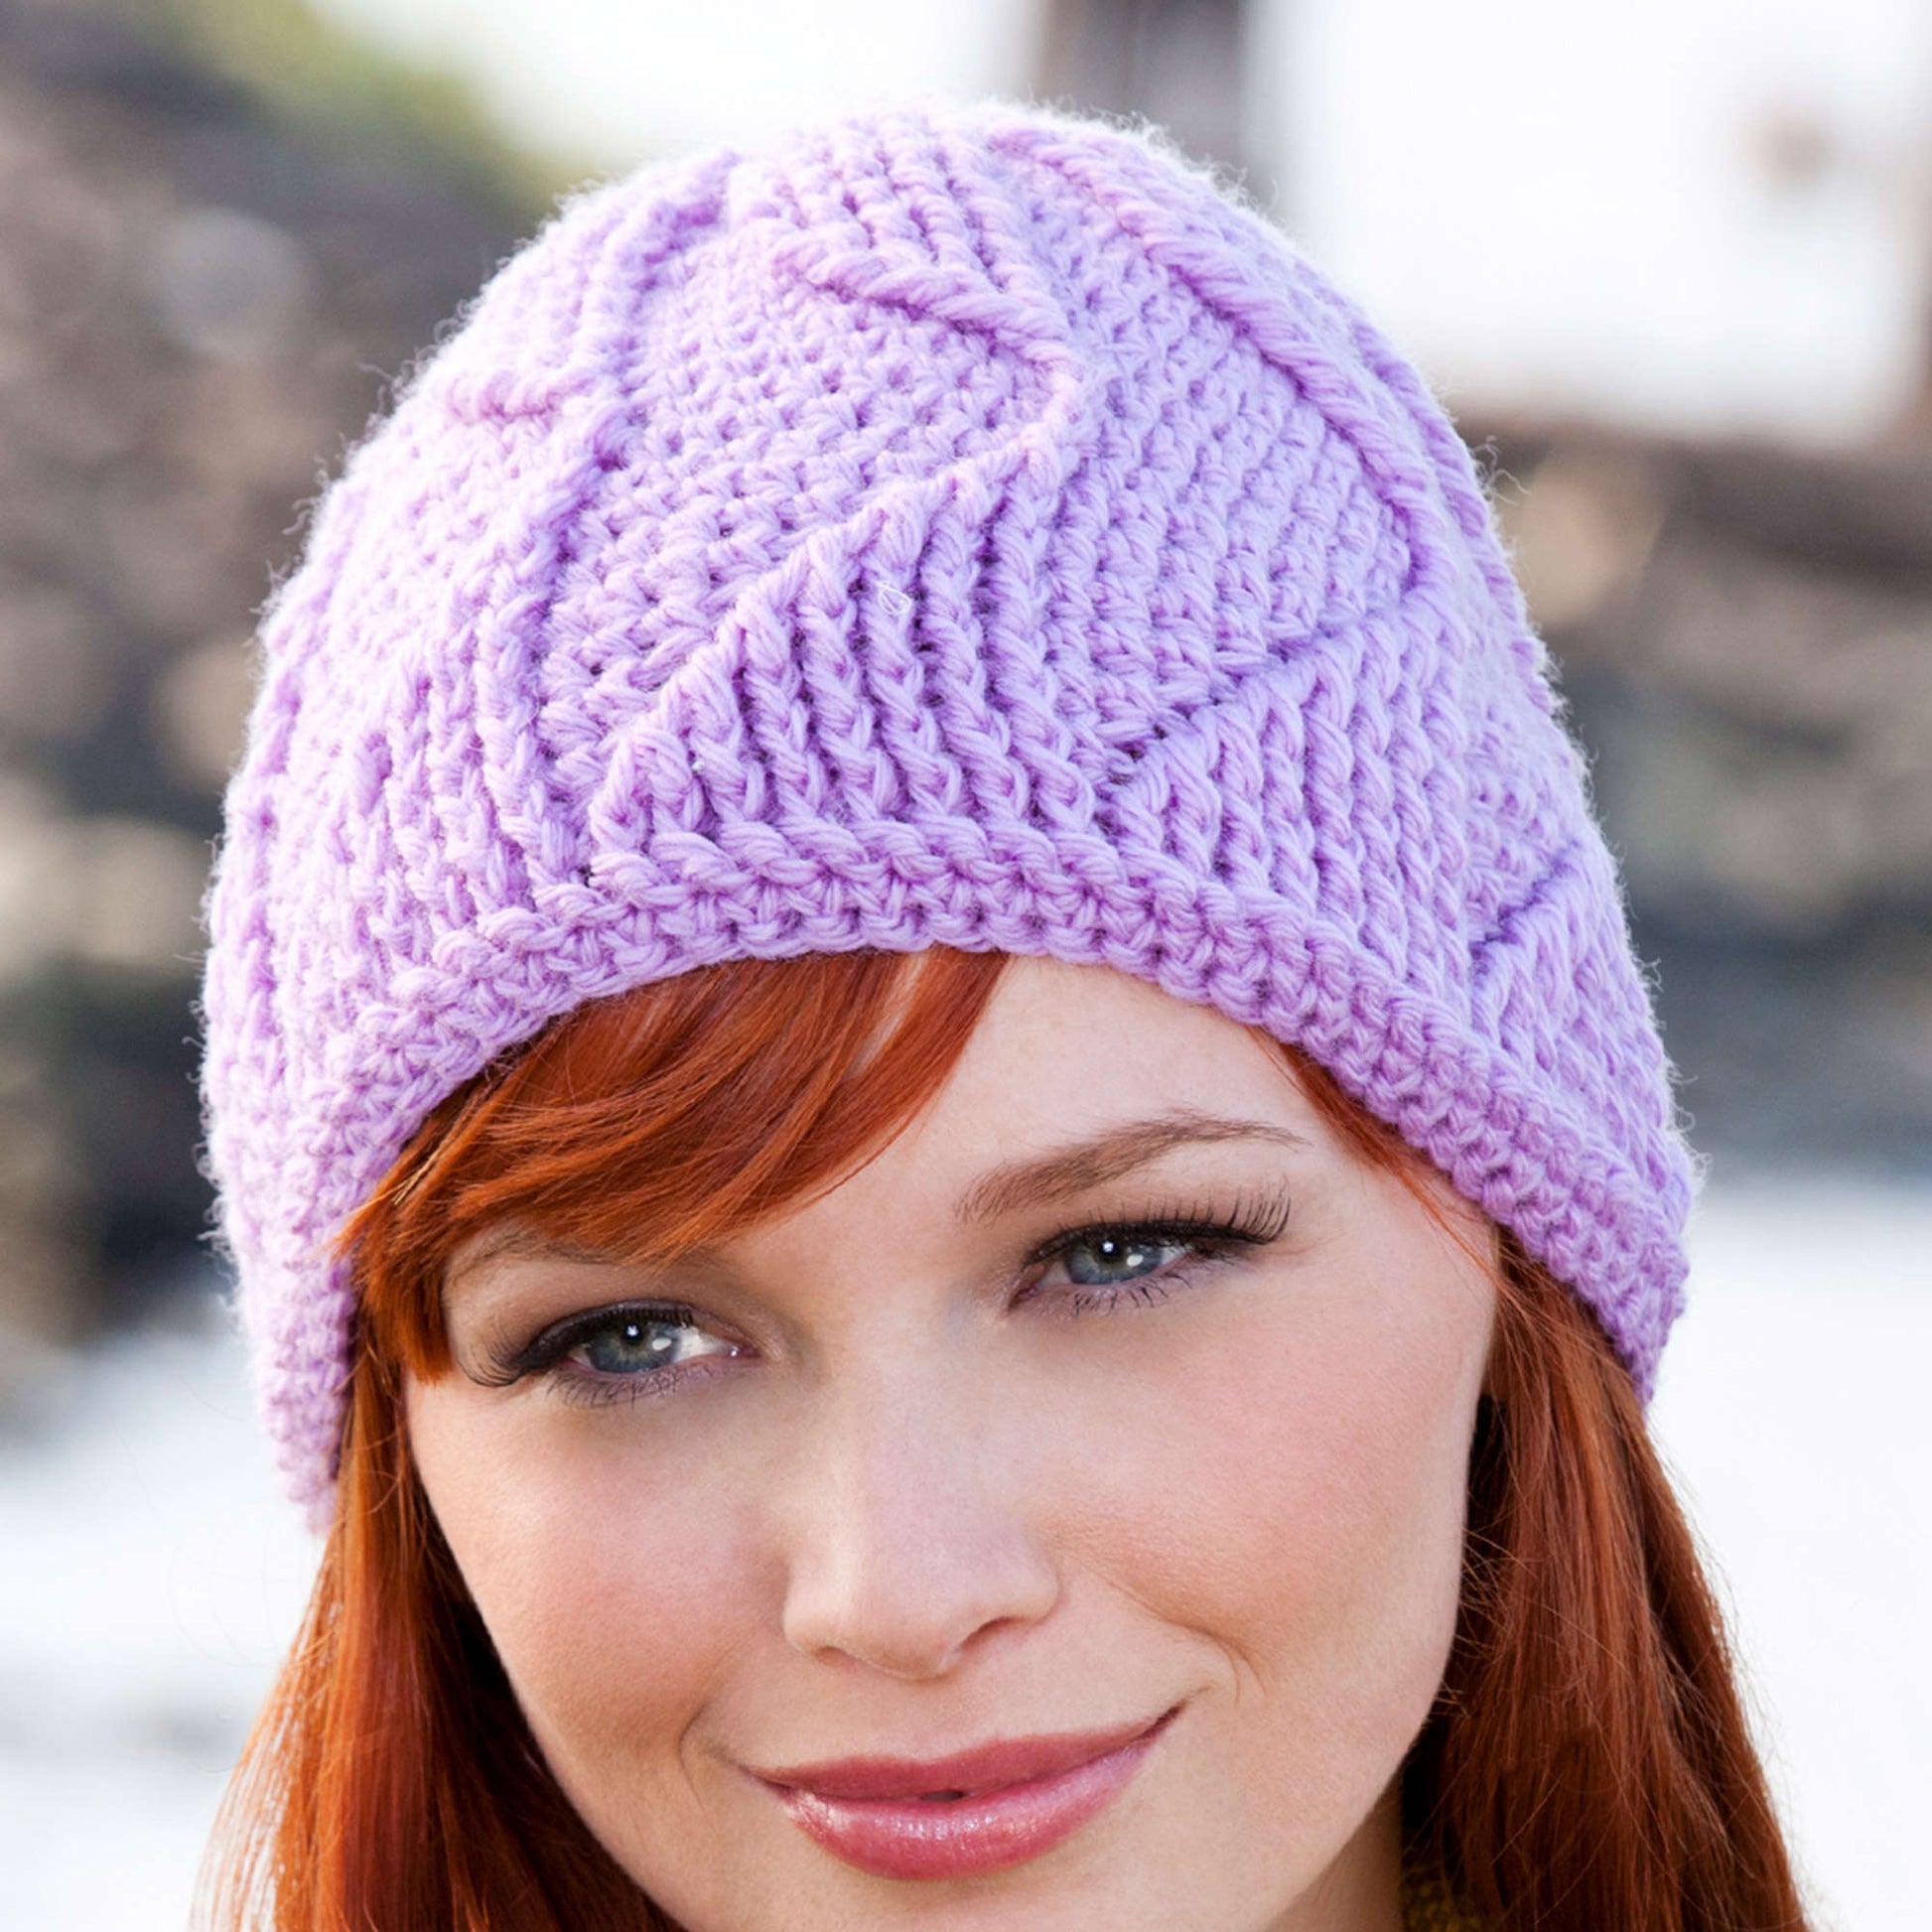 Free Red Heart Waves-A-Head Hat Crochet Pattern